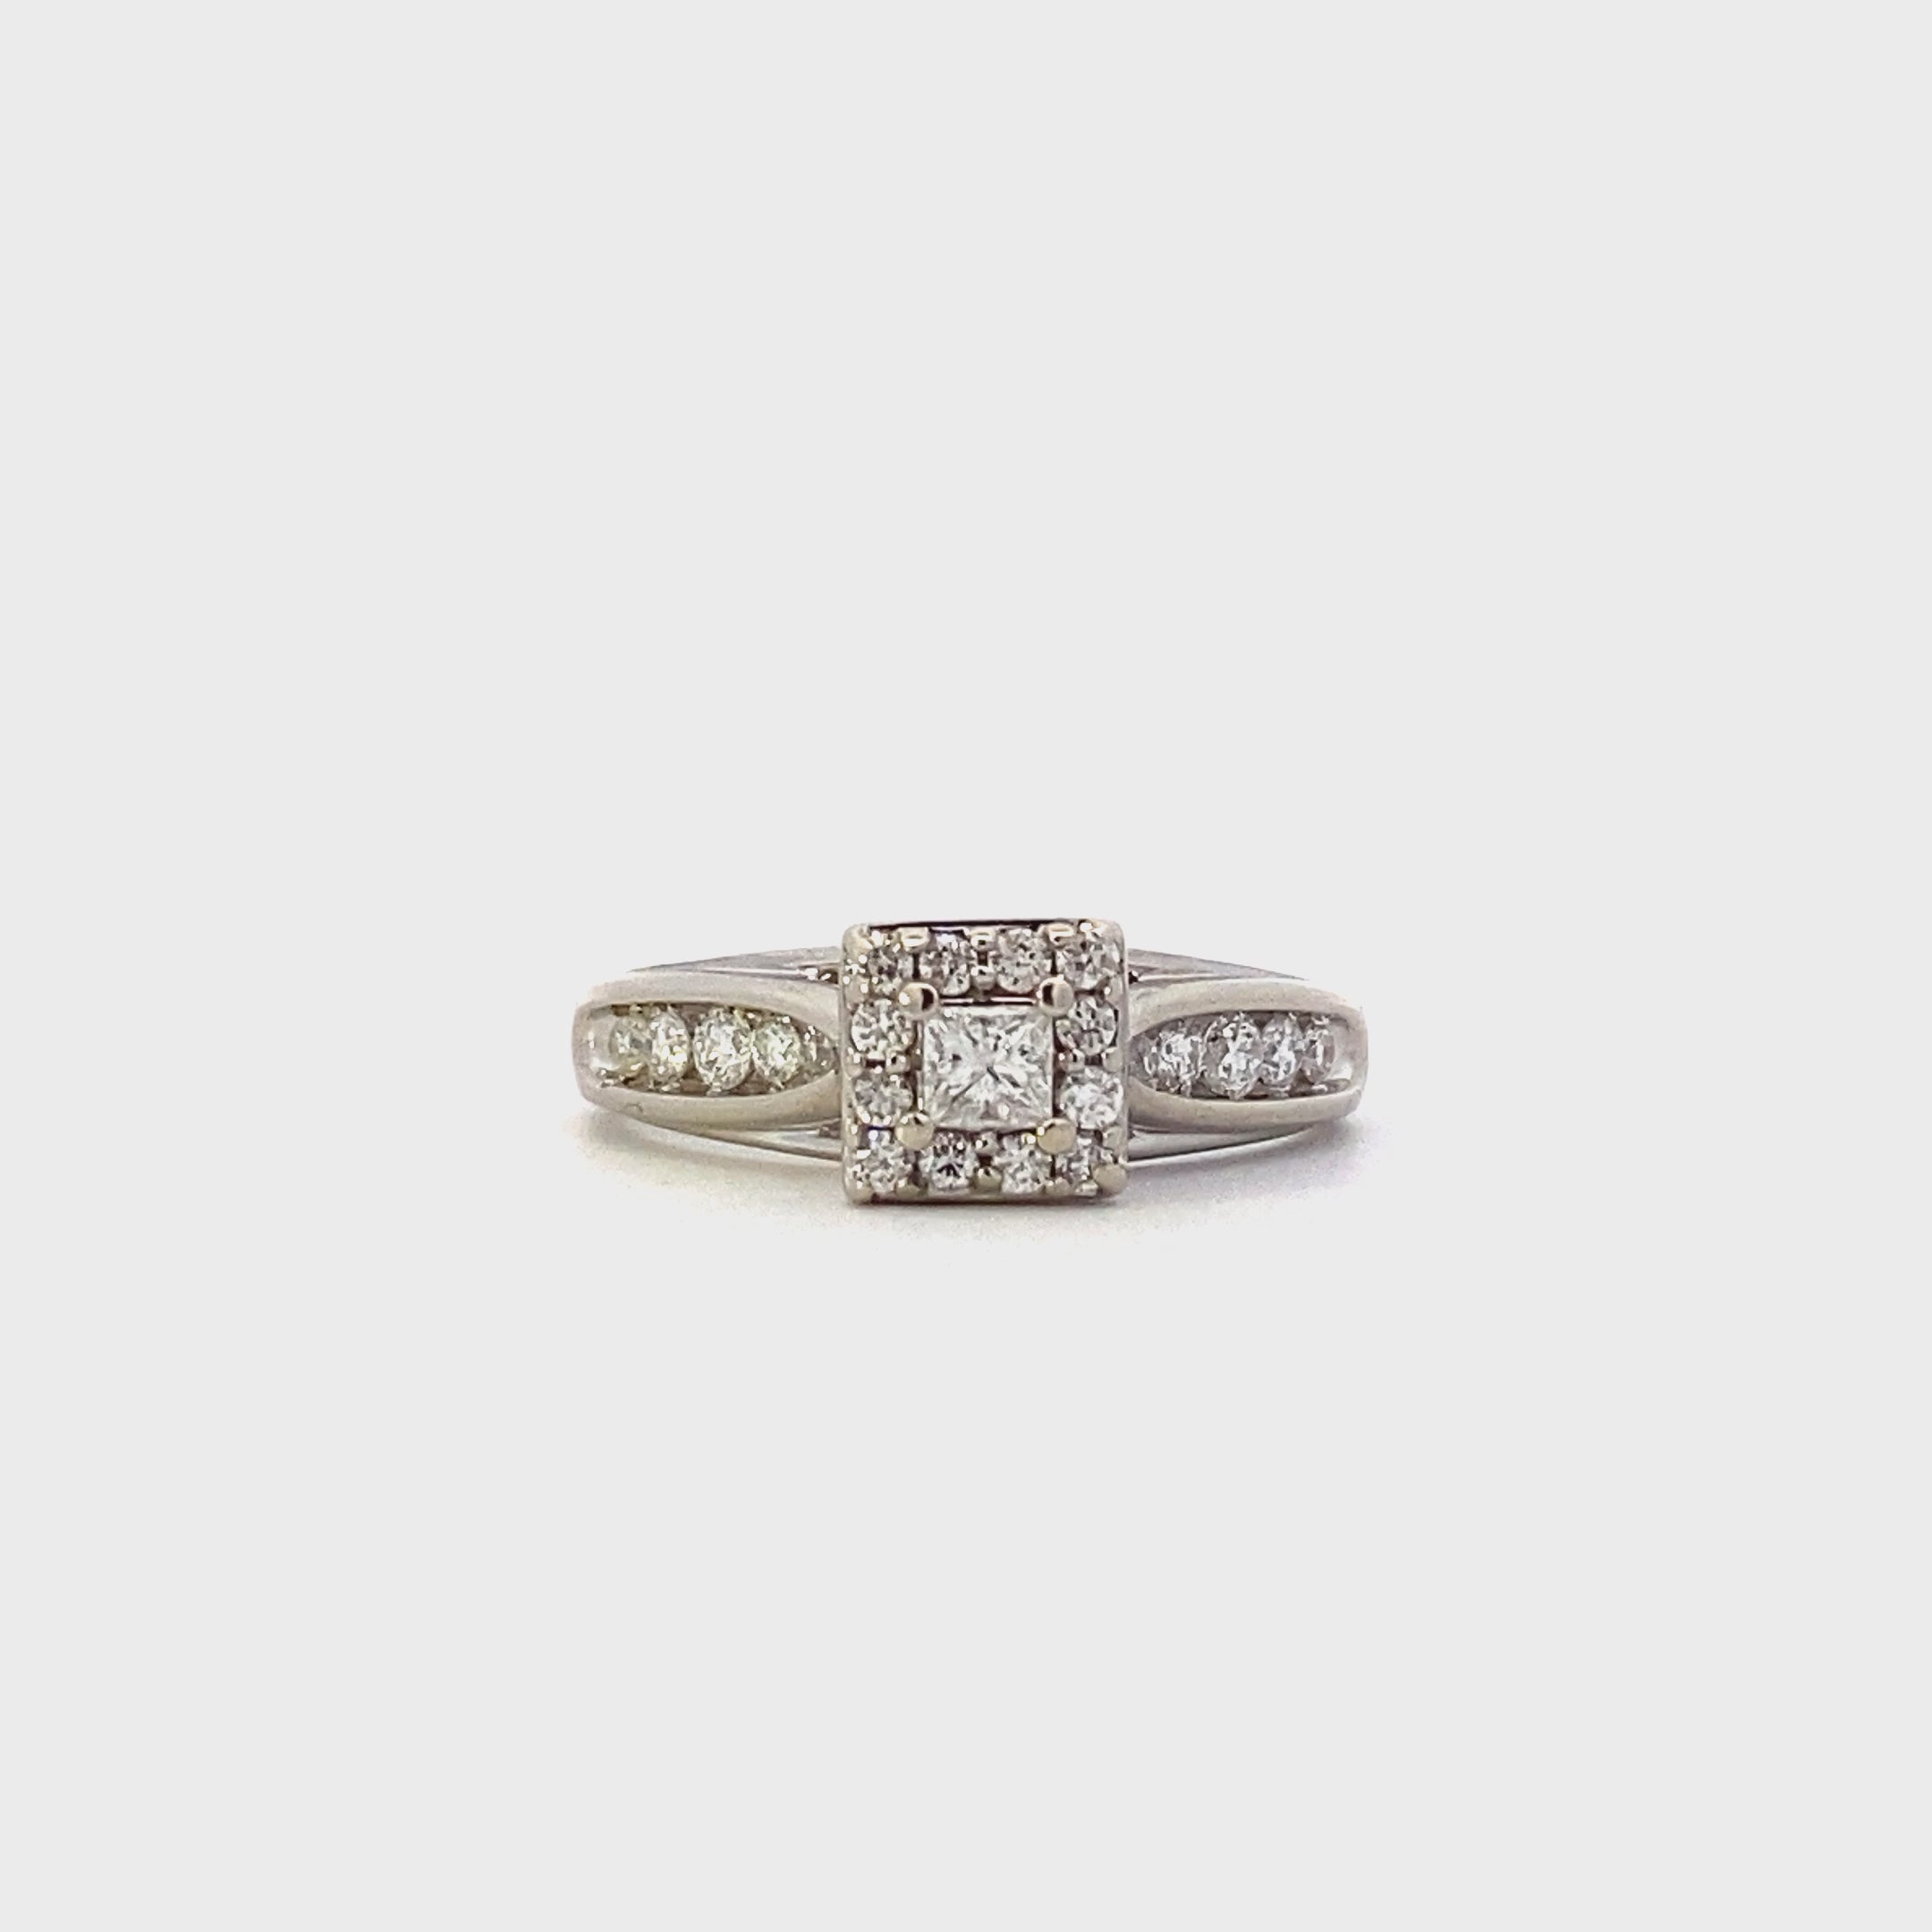 10K White Gold Diamond Ring - 0.44ct